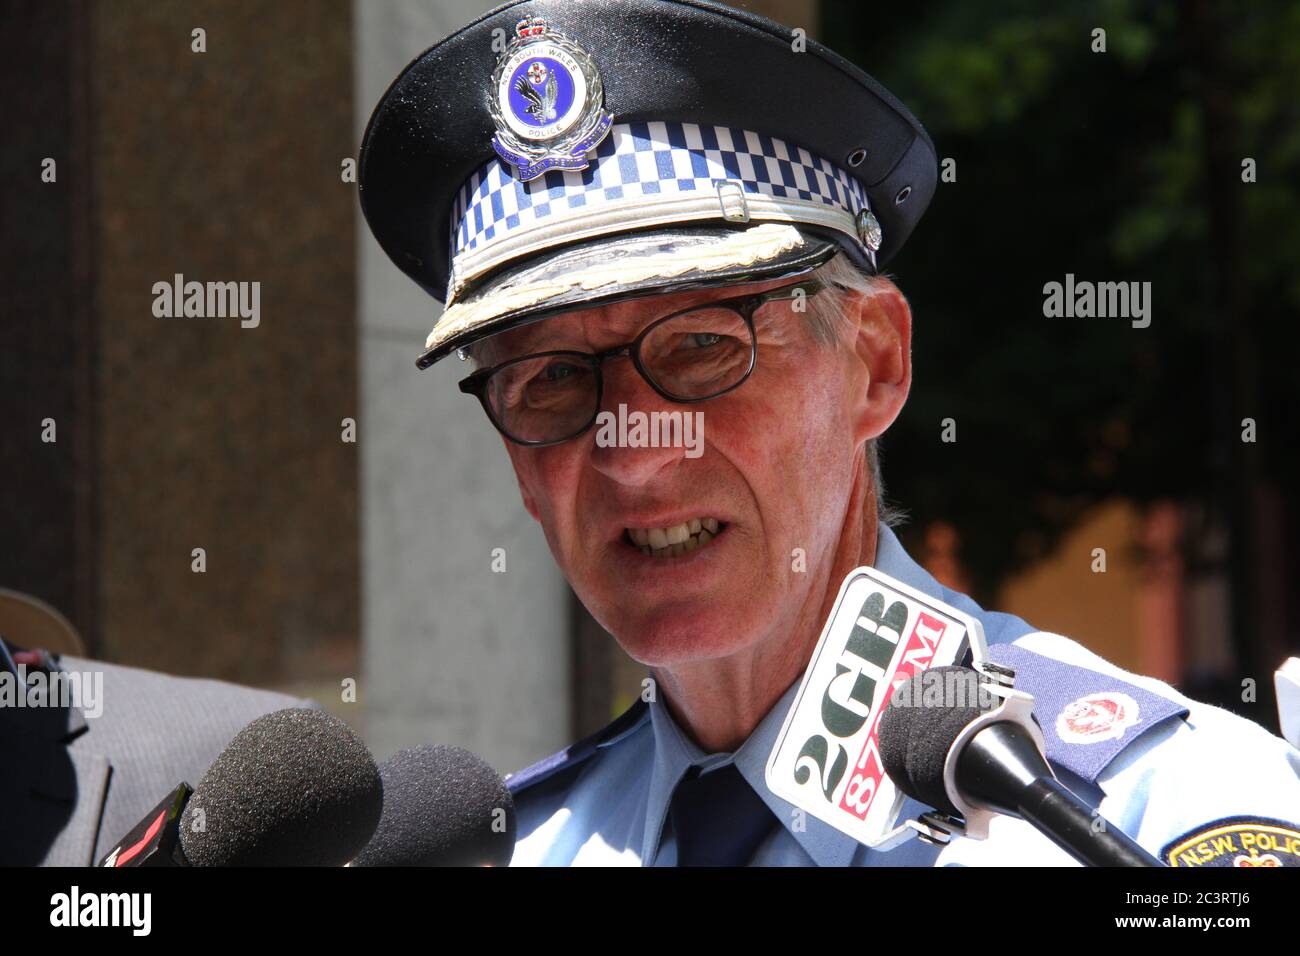 Le commissaire adjoint Mark Murdoch informe les médias et répond aux questions concernant l'incident impliquant un homme dans une voiture blanche garée à l'extérieur de la Pa de Nouvelle-Galles du Sud Banque D'Images